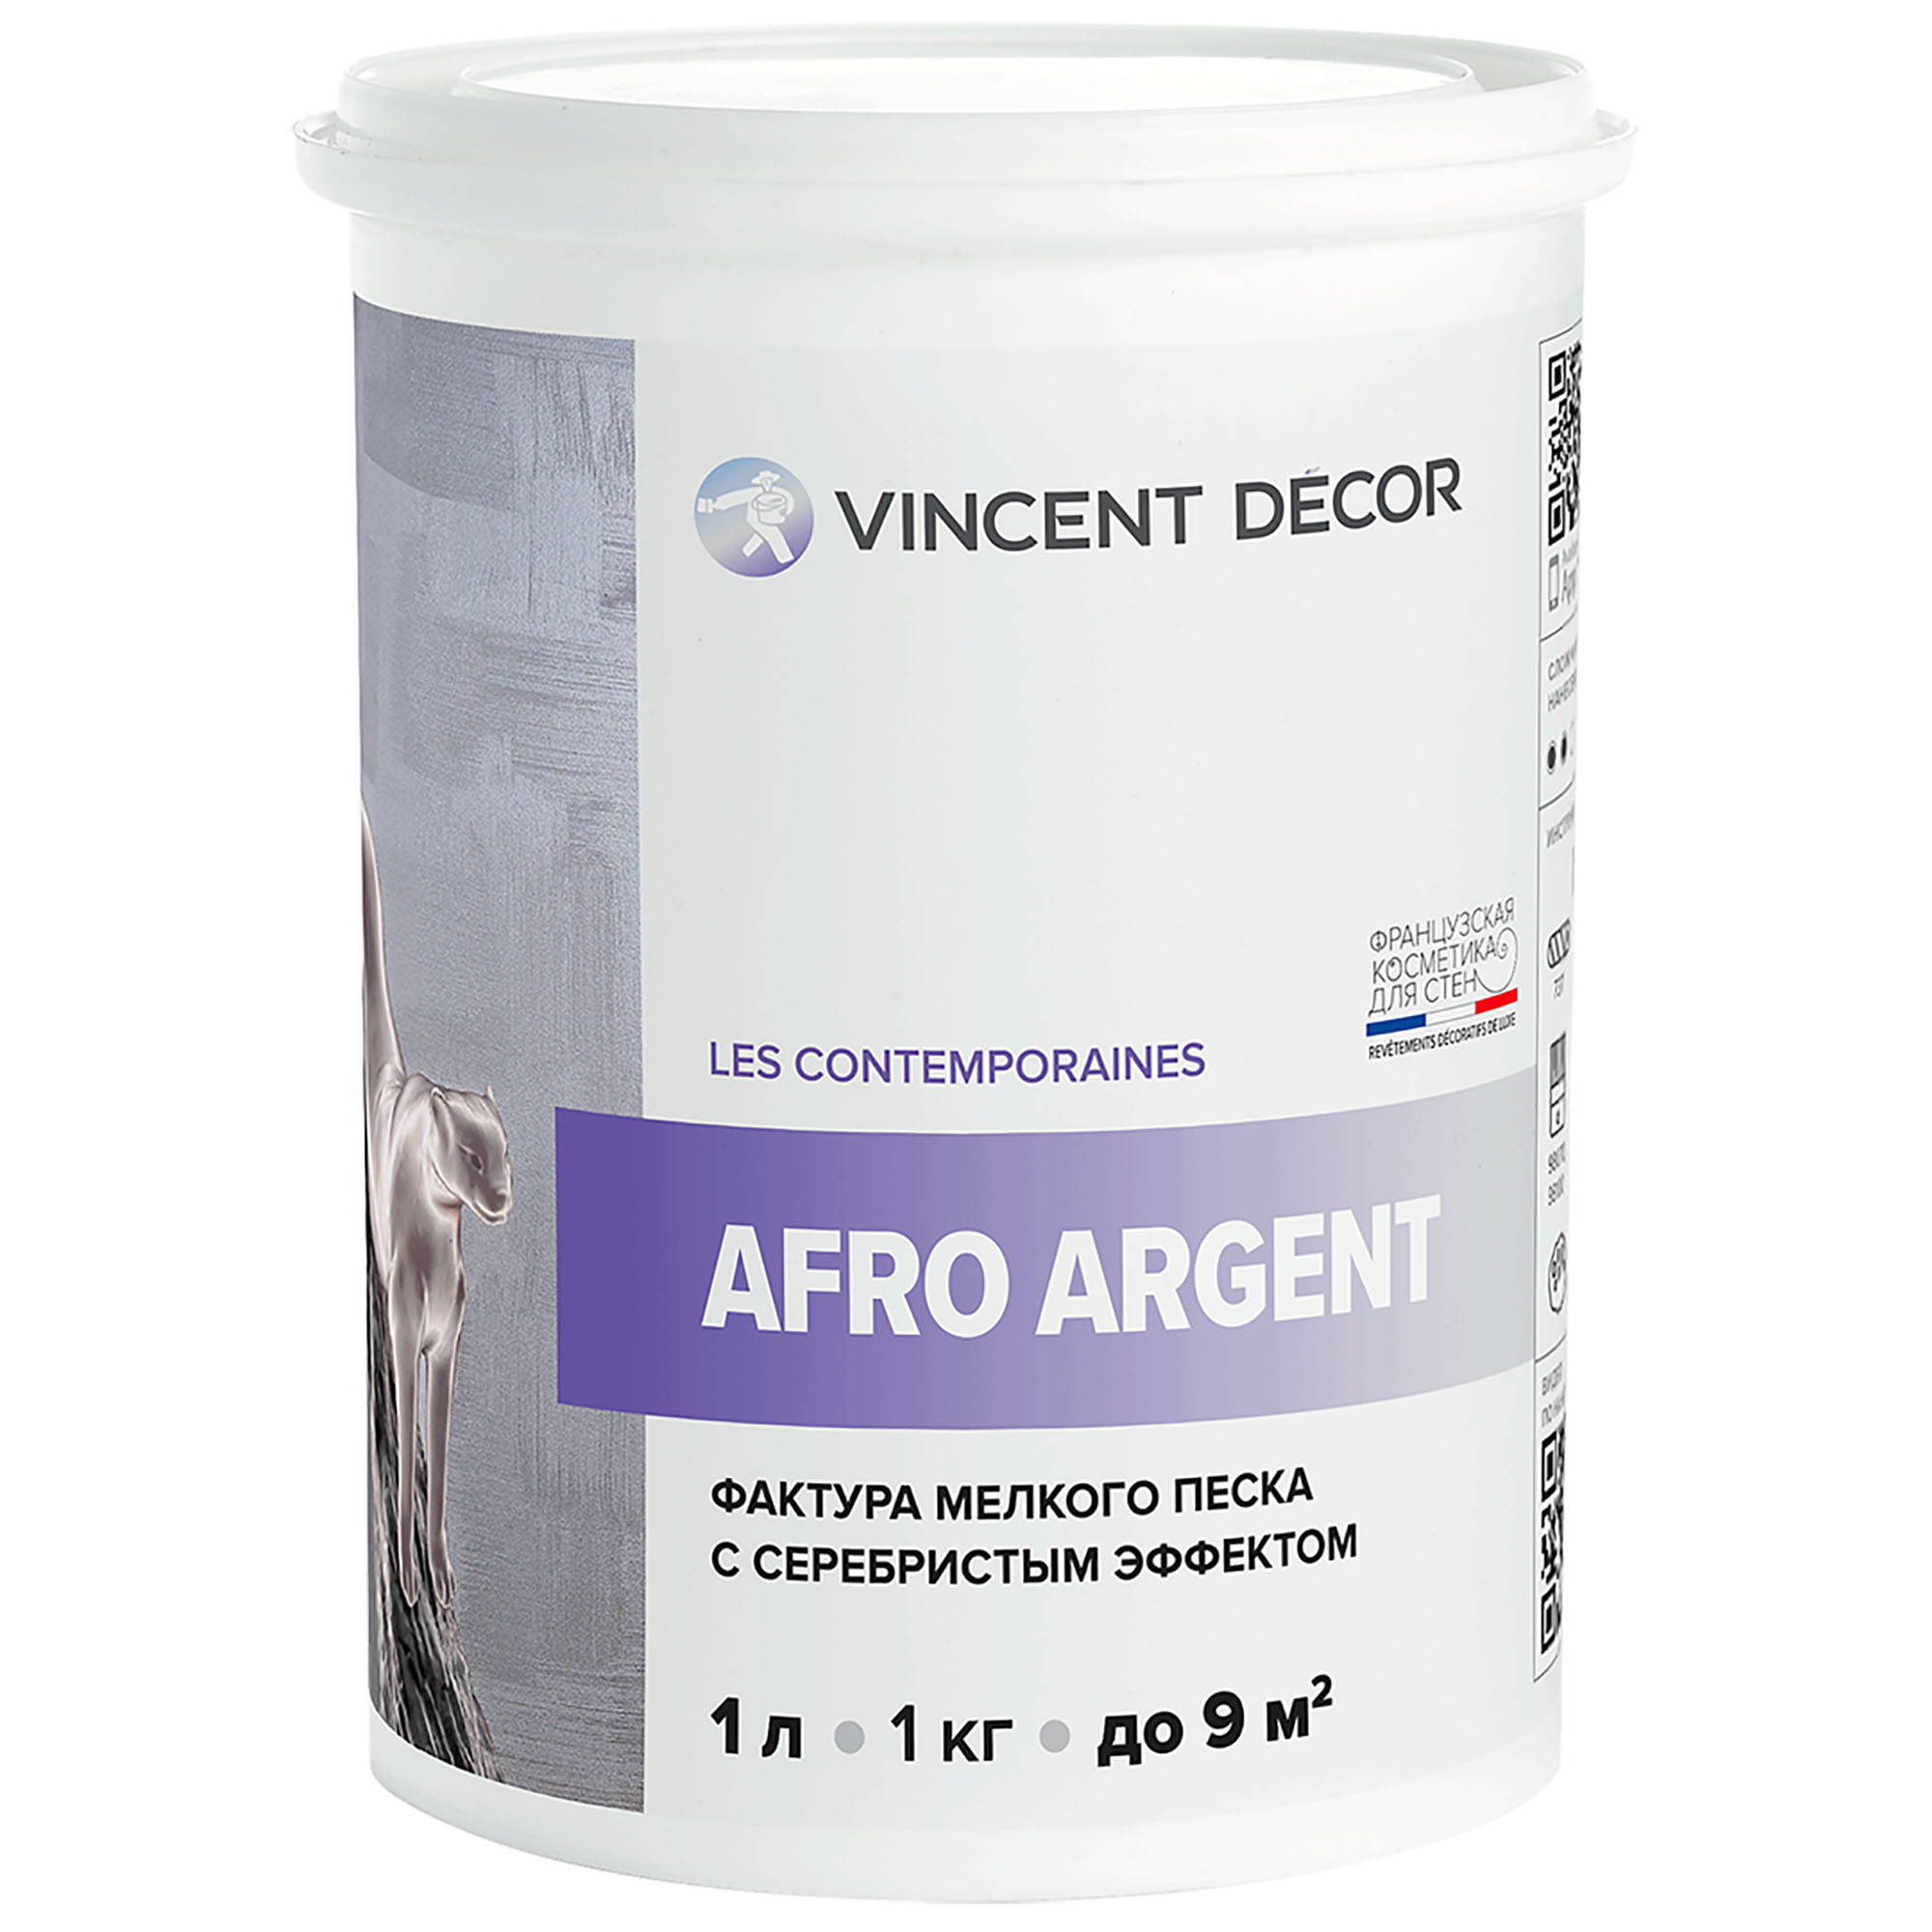 Декоративное покрытие для стен Vincent Decor Afro Argent с фактурой мелкого песка с серебристым эффектом 1 л декоративное покрытие с более выраженным эффектом перламутрового шёлка decorazza dz seta da vinci sd 001 5 кг